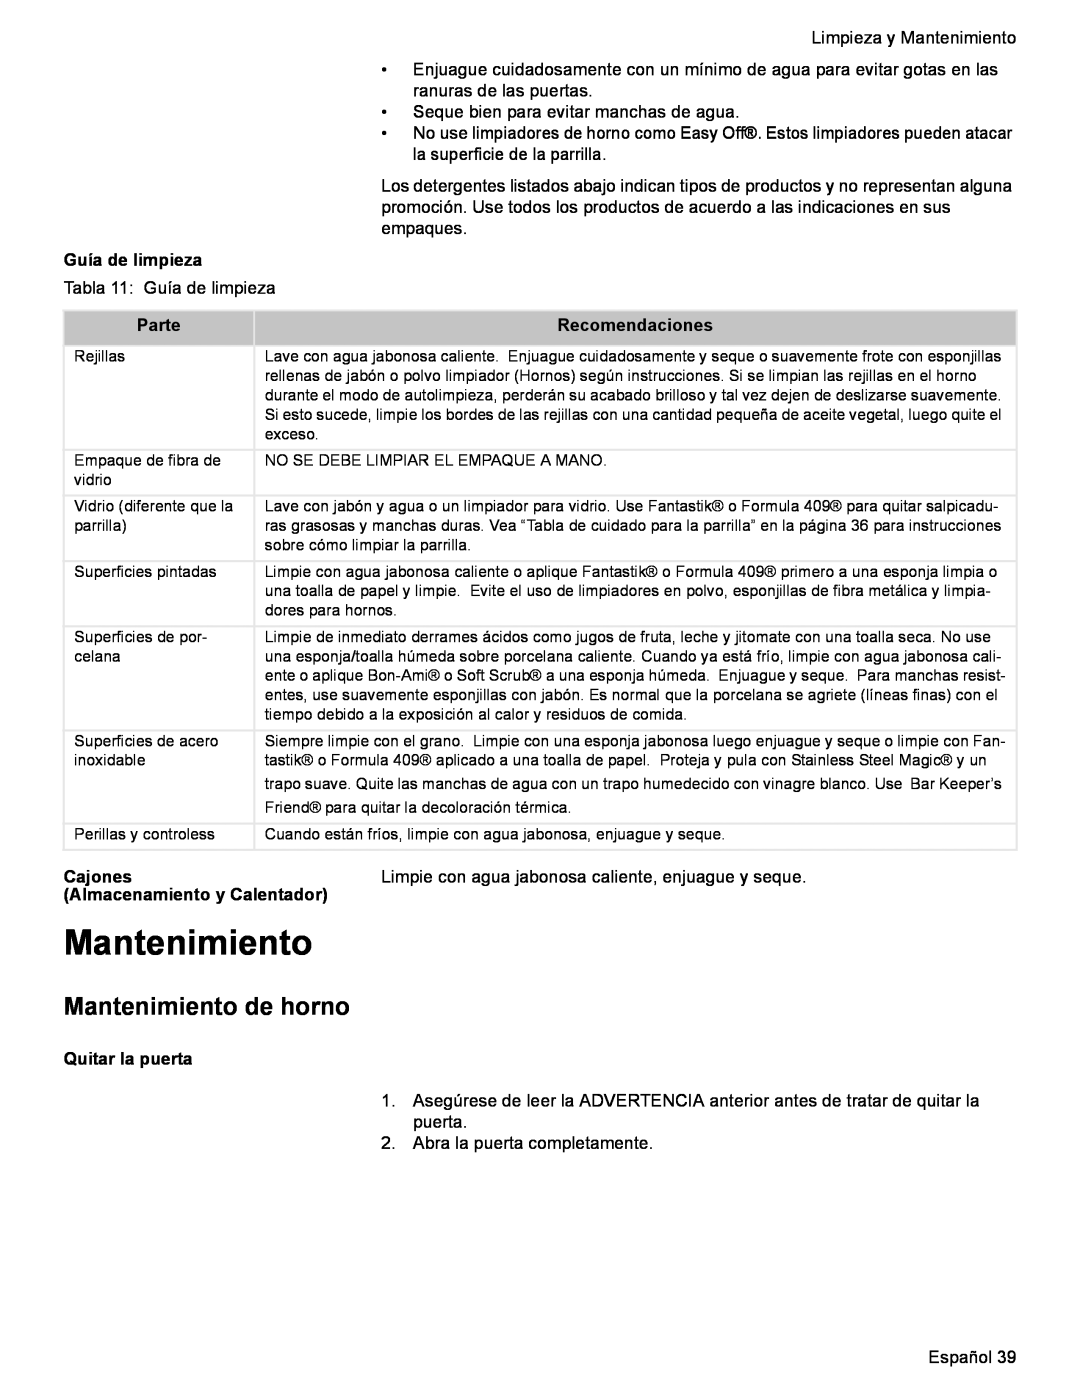 Bosch Appliances HES7282U Mantenimiento de horno, Guía de limpieza, Parte, Recomendaciones, Cajones, Quitar la puerta 